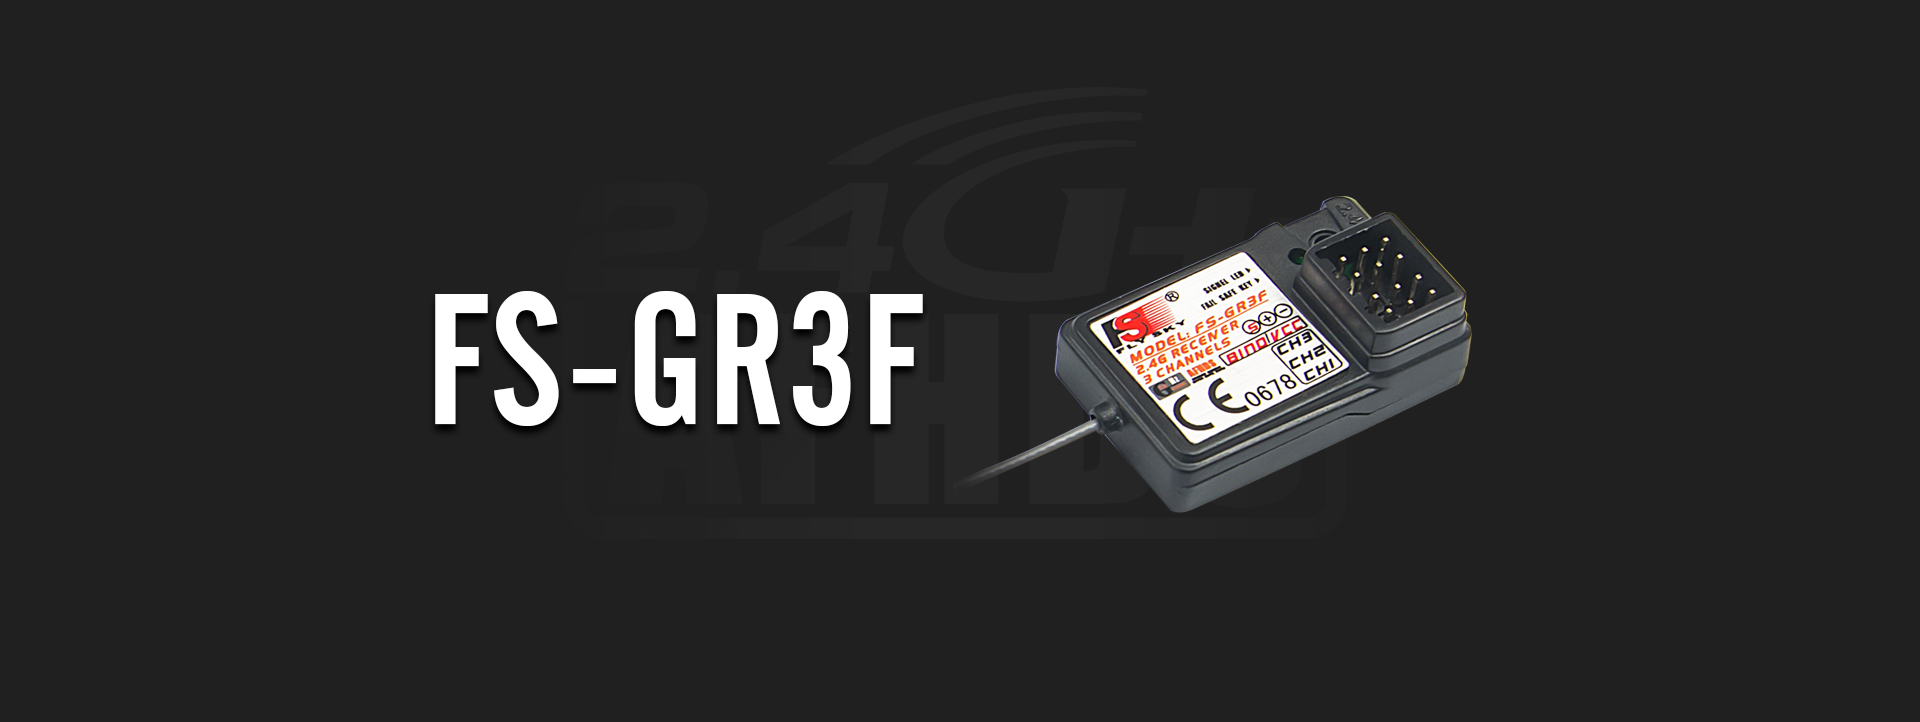 FS-GR3F